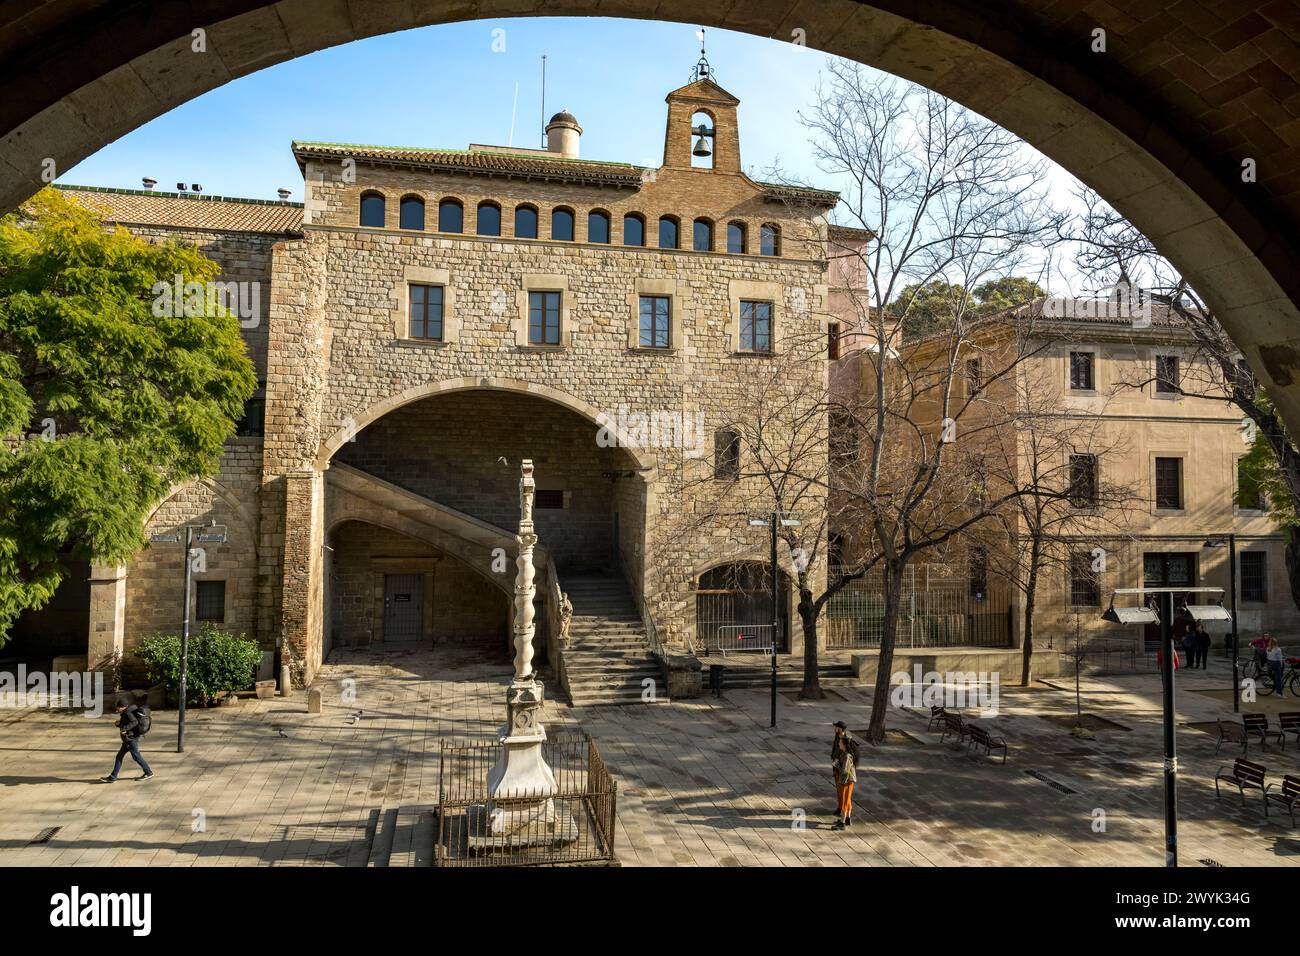 Espagne, Catalogne, Barcelone, quartier El Raval, l'ancien hôpital de la Sainte Croix (Hôpital Sant Pau - Santa Creu) dans le style gothique catalan, aujourd'hui la Bibliothèque de Catalogne Banque D'Images